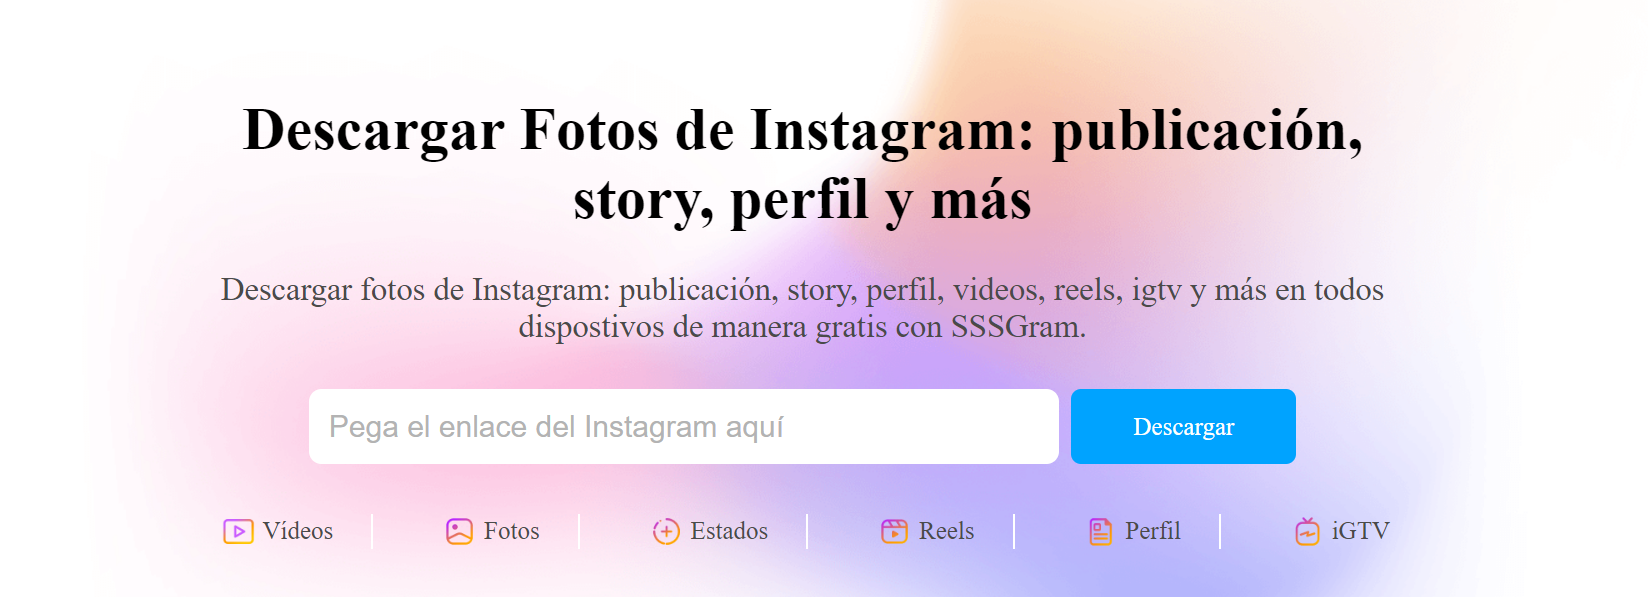 SSSGram, permite descargar todo tipo de contenidos de Instagram de manera muy intuitiva, rápida y online.